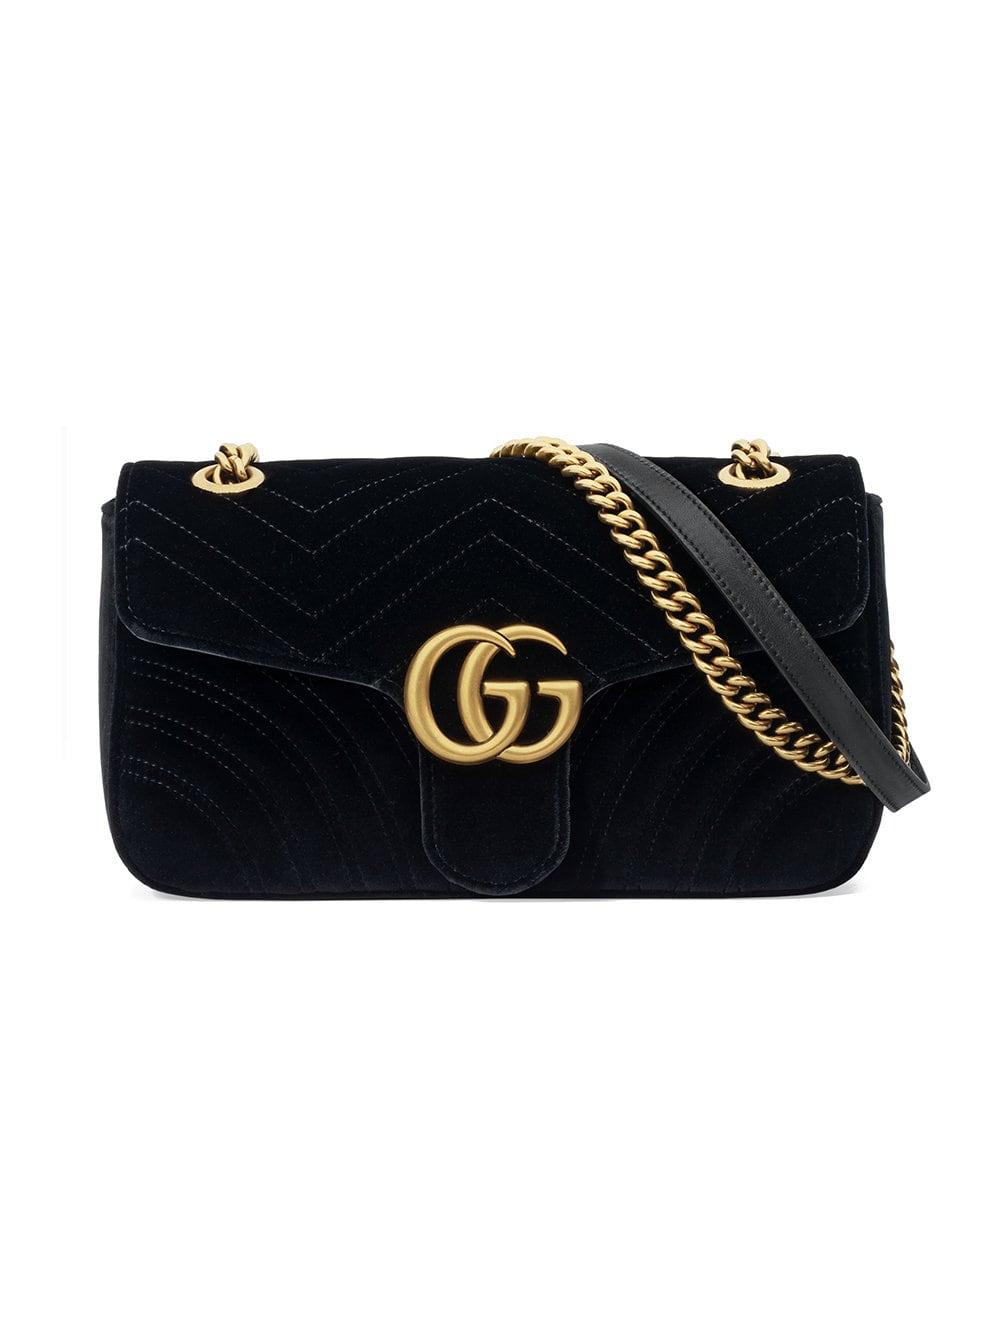 Gucci GG Marmont Velvet Shoulder Bag in Black - Lyst